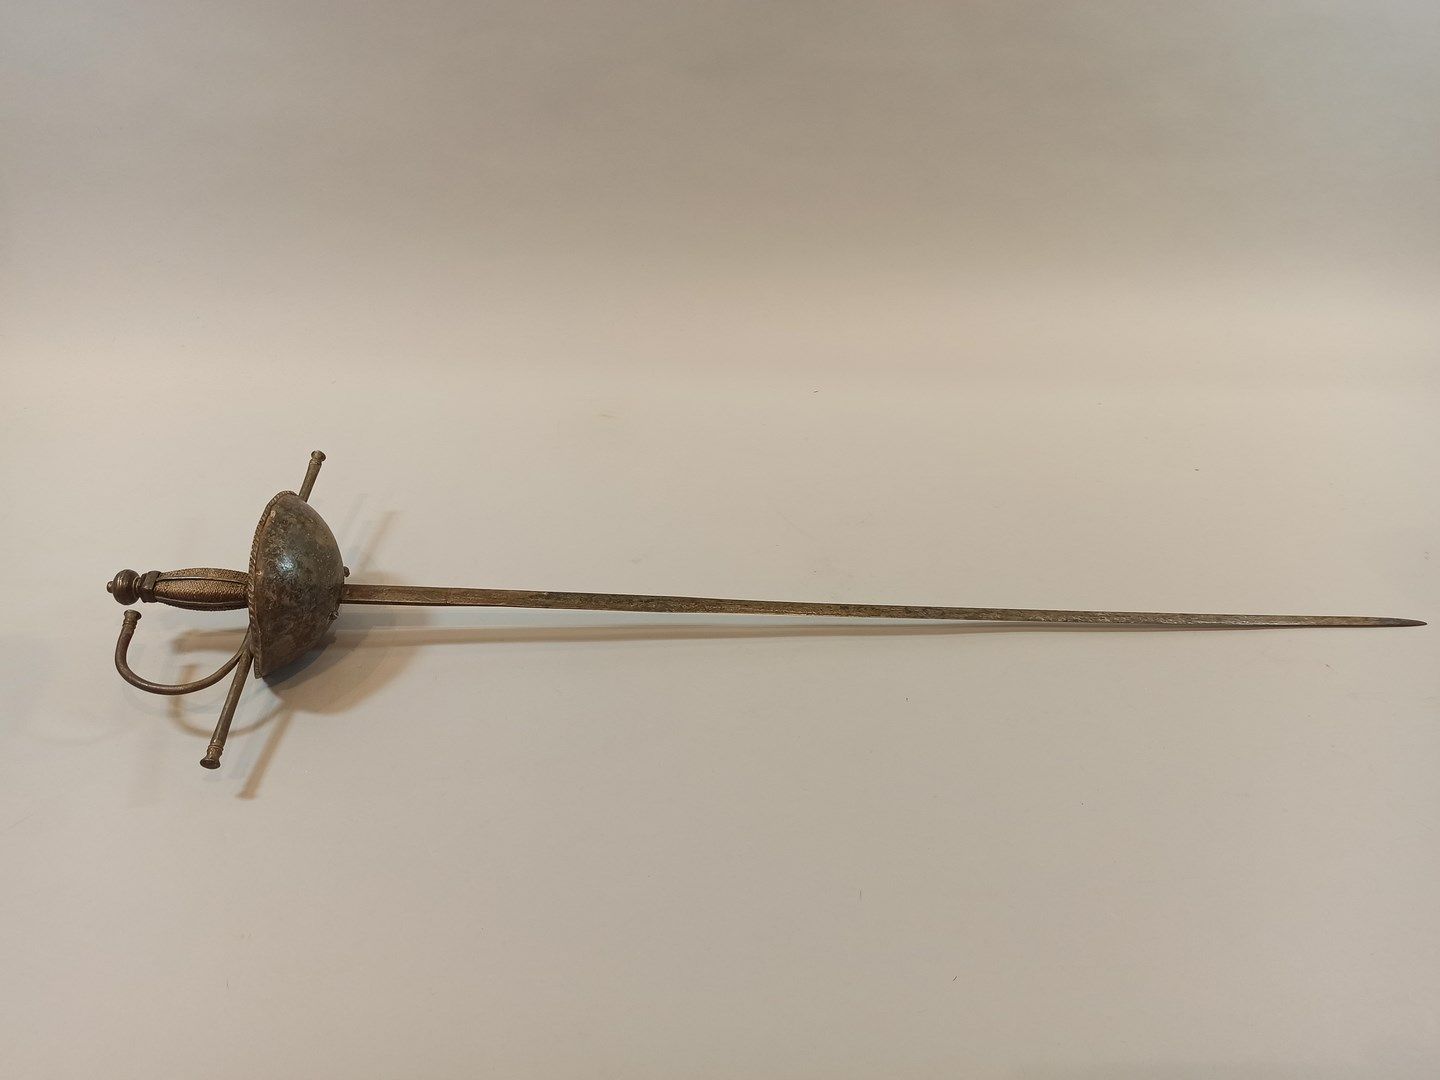 Null 被称为 "à la Taza "的武器的剑。

丝状轴由四根垂直线加固。卵圆形的头。

横条上有水平的绗缝，壳上有条纹的边框。精美的刀片，有装饰。

&hellip;